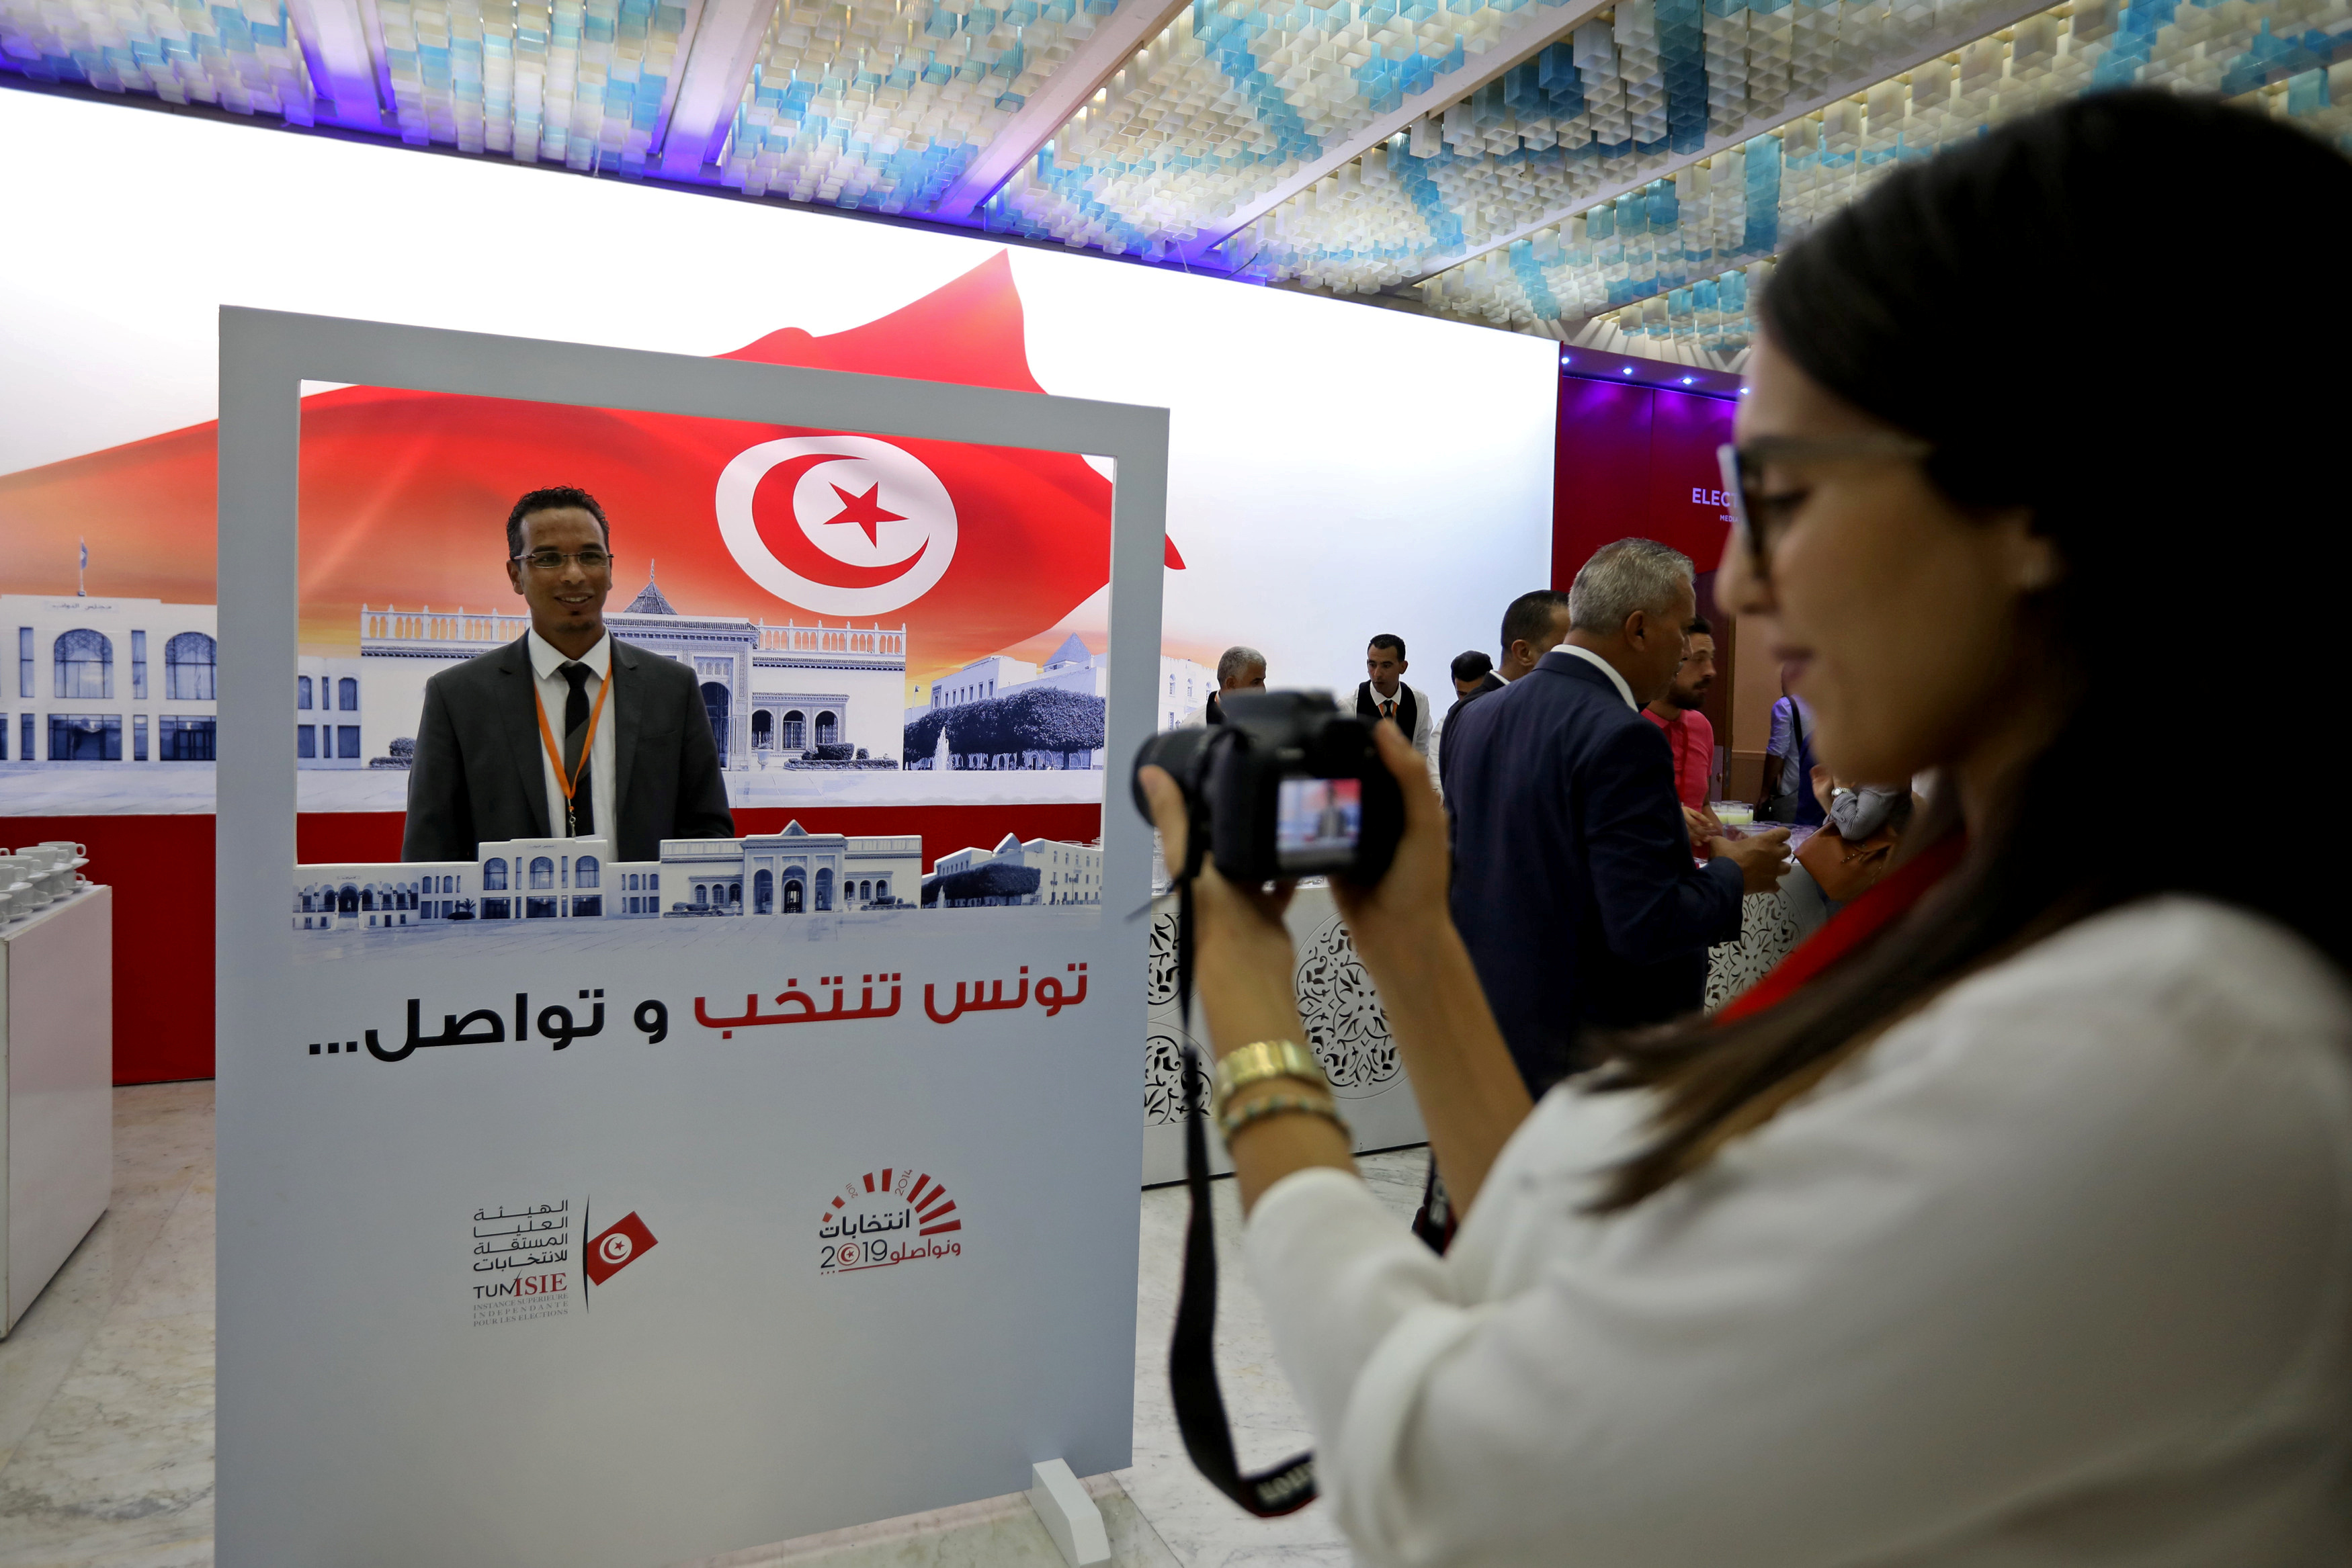 التونسيون يتوجهون لإنتخاب رئيس جديد في ثاني انتخابات بعد الثورة